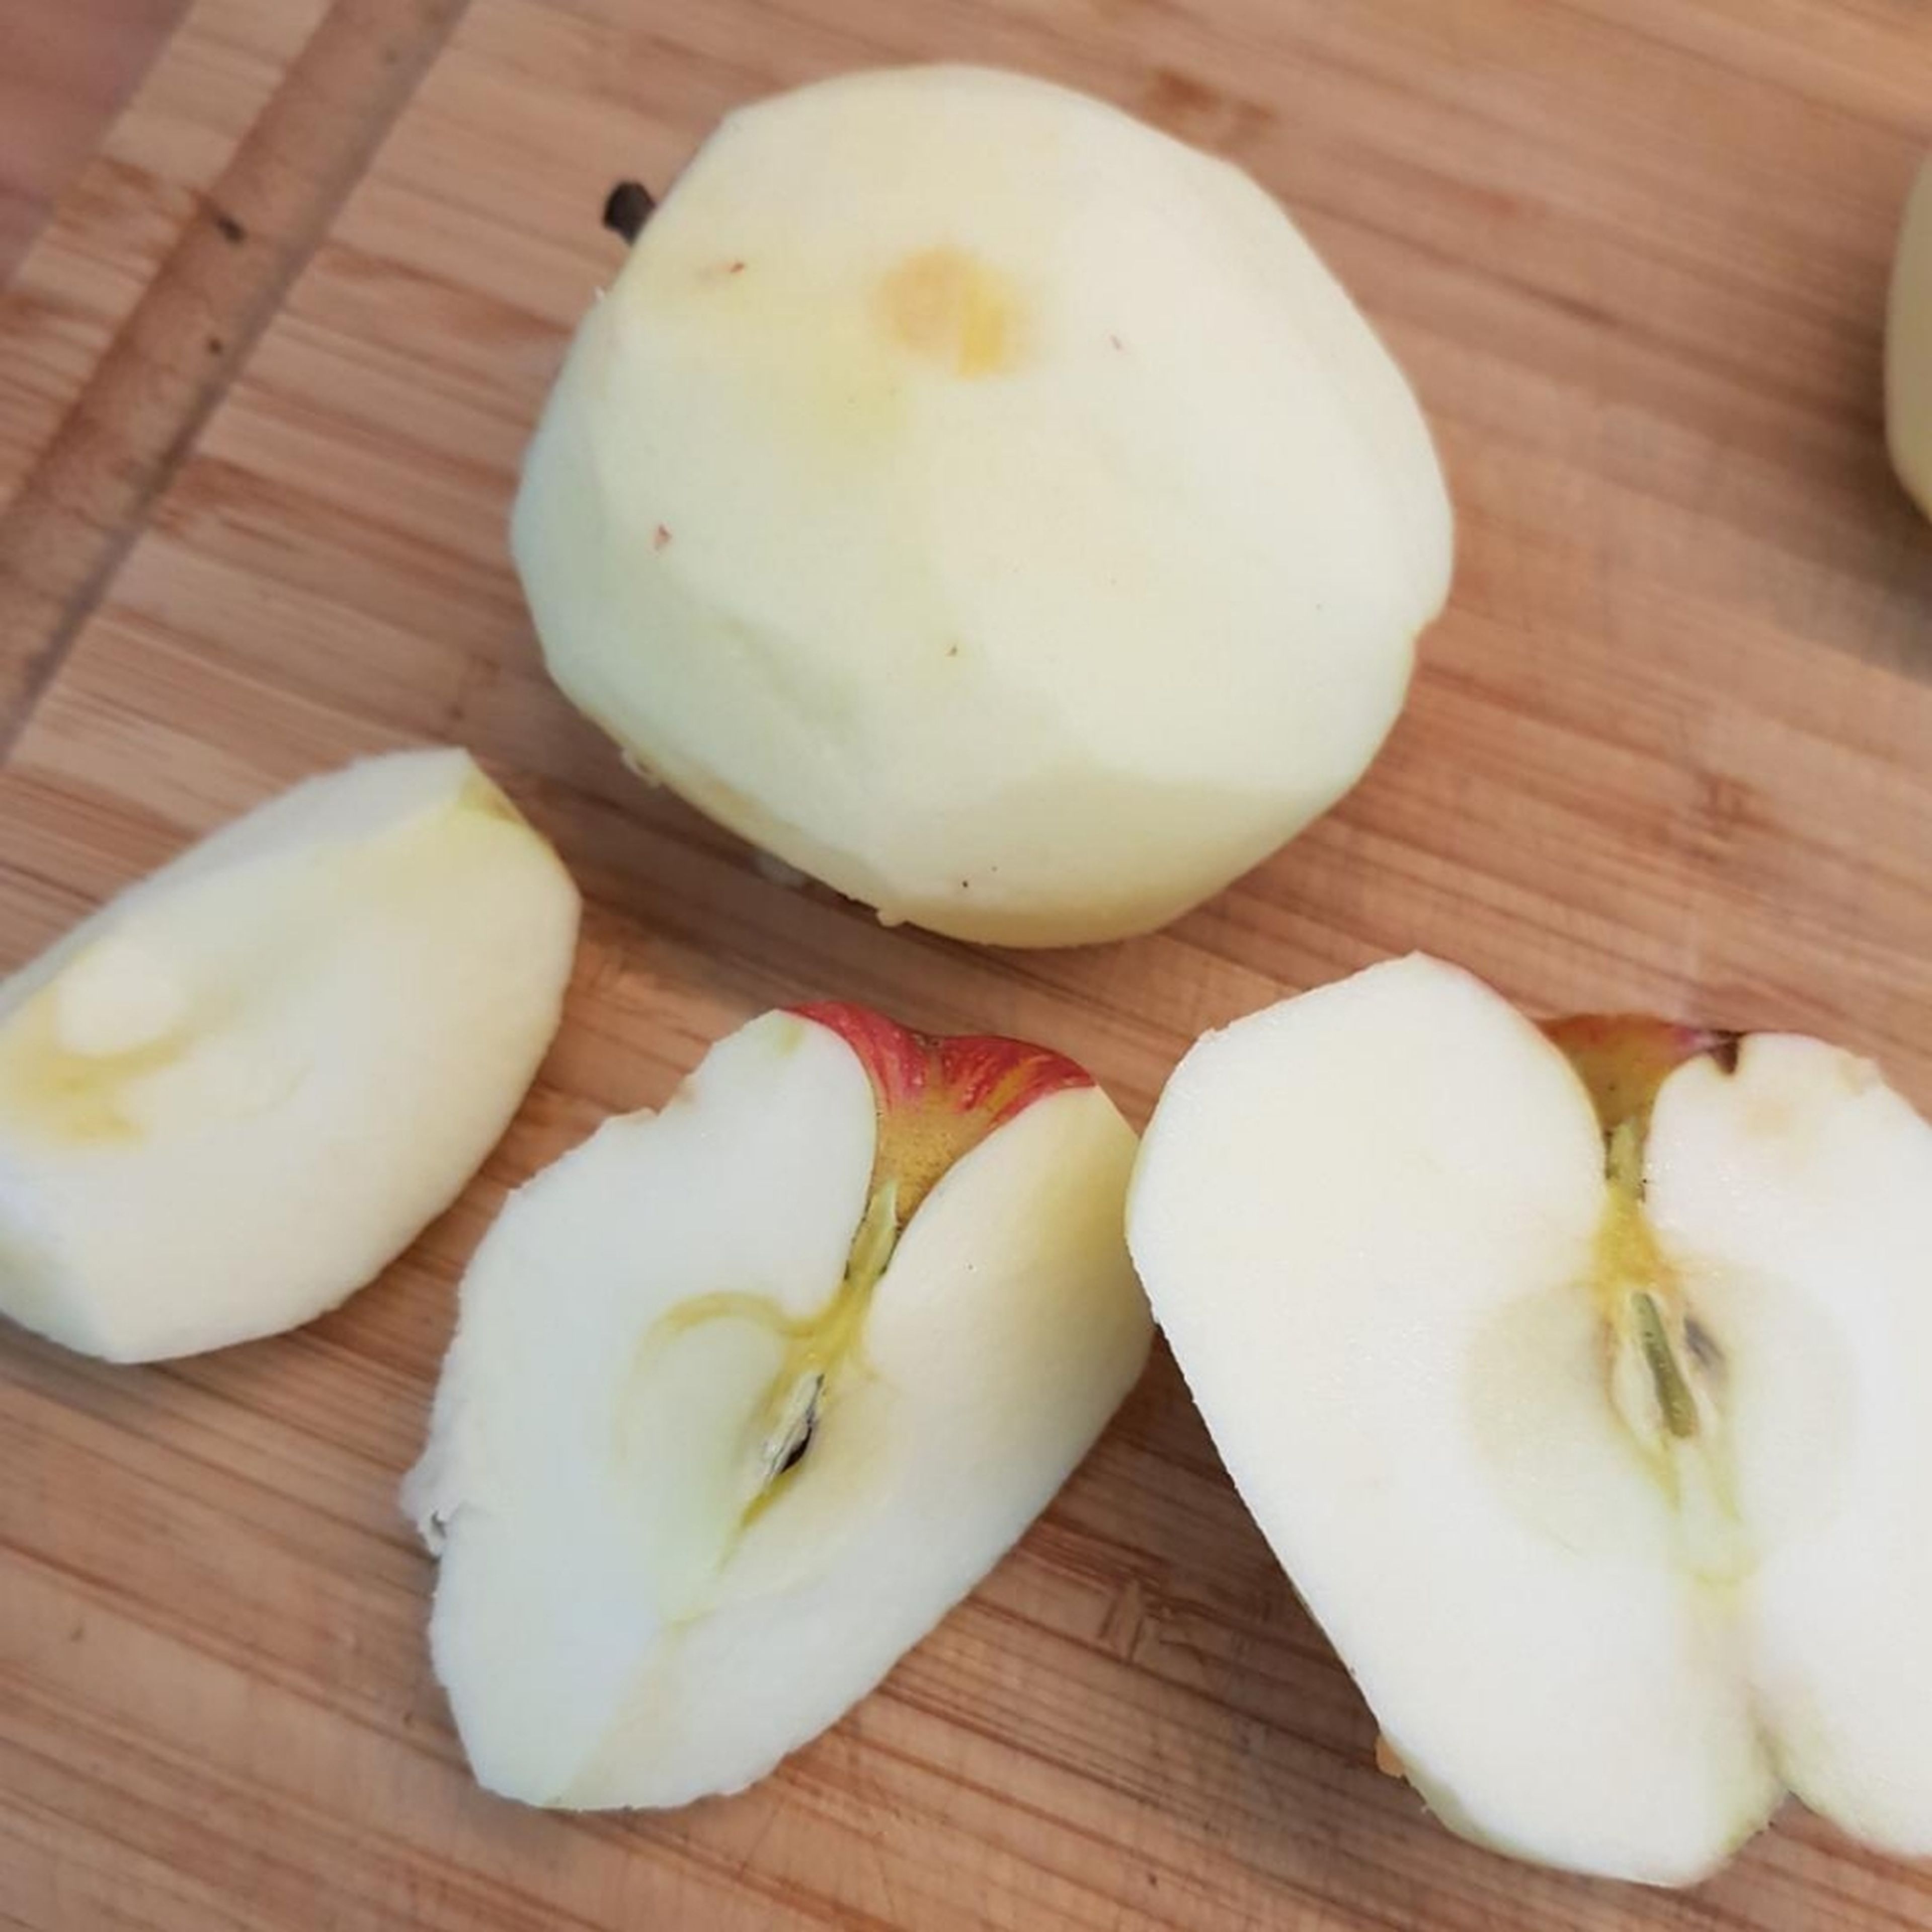 Äpfel schälen, halbieren, entkernen und in dicke Spalten schneiden